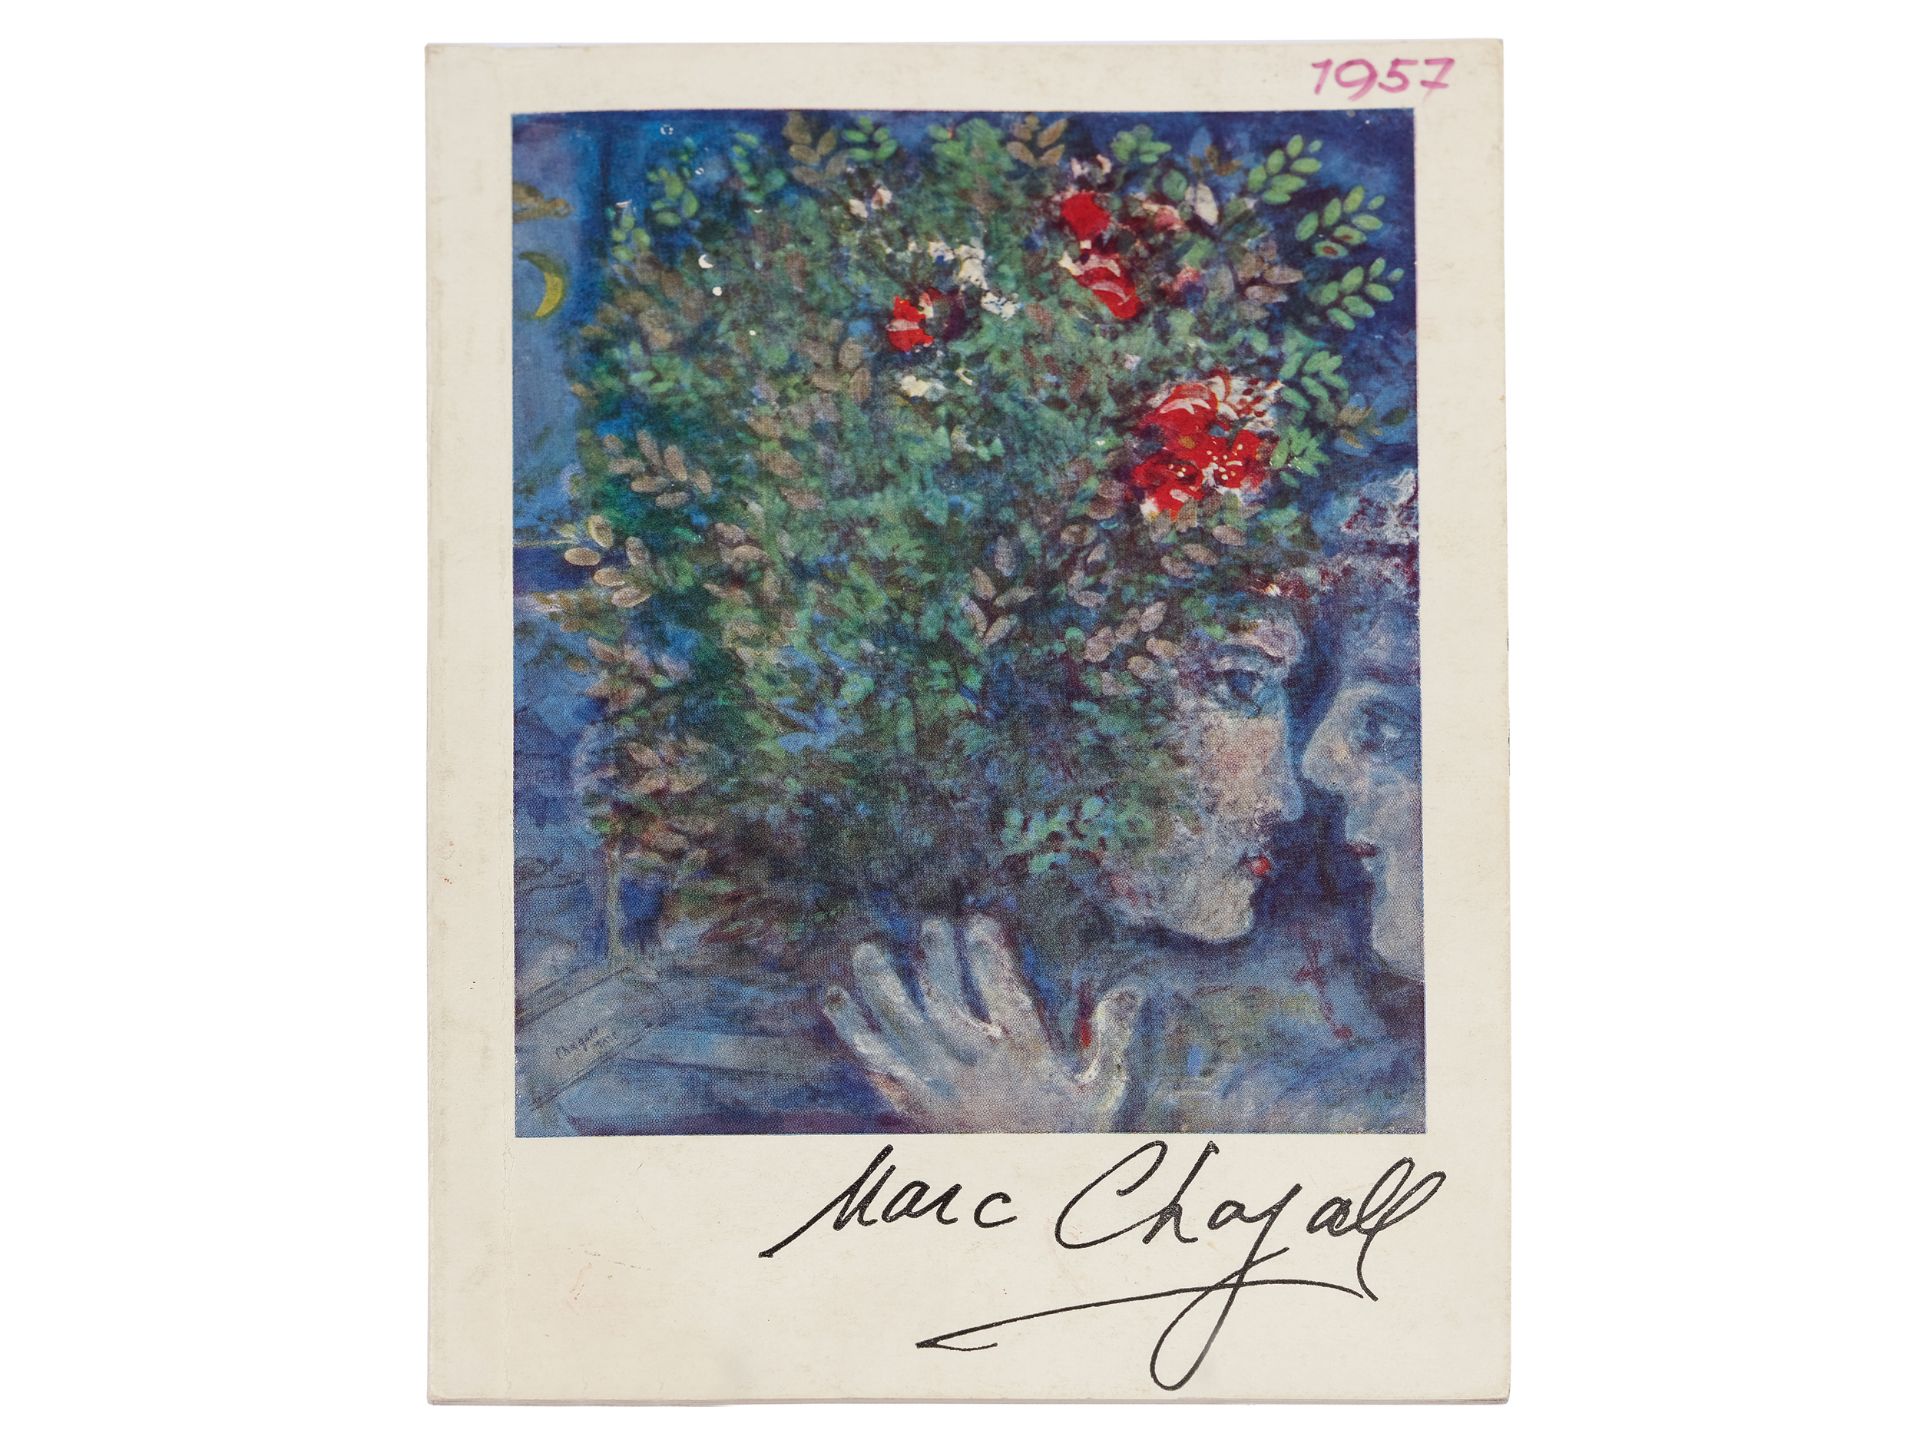 Kleines Heft mit Widmung des Künstlers Marc Chagall - Bild 2 aus 4